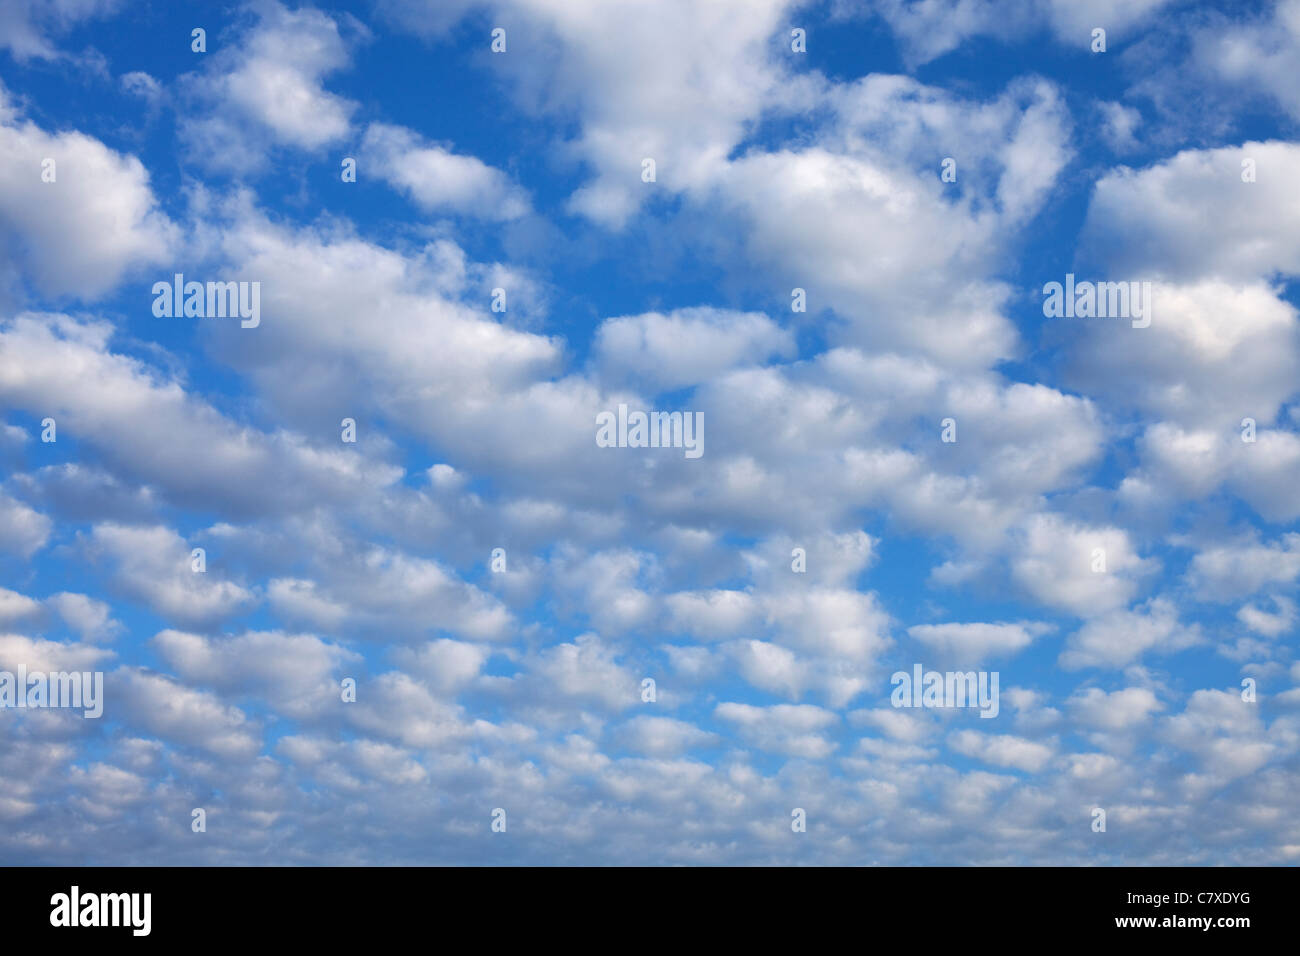 imagen de fotograma completo de las nubes contra un cielo azul Foto de stock